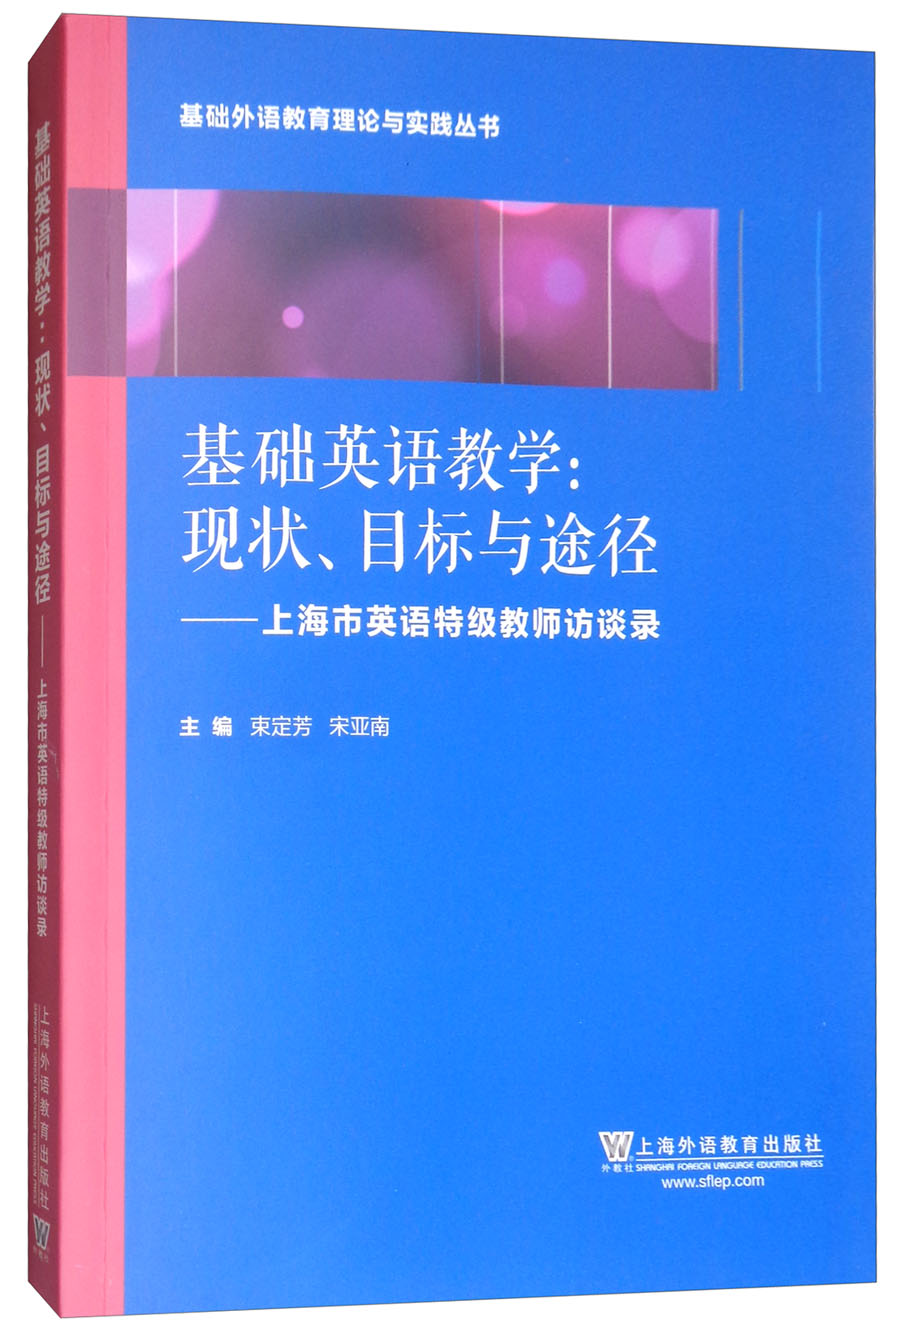 基础外语教育理论与实践丛书·基础英语教学·现状、目标与途径：上海英语特级教师访谈录 txt格式下载